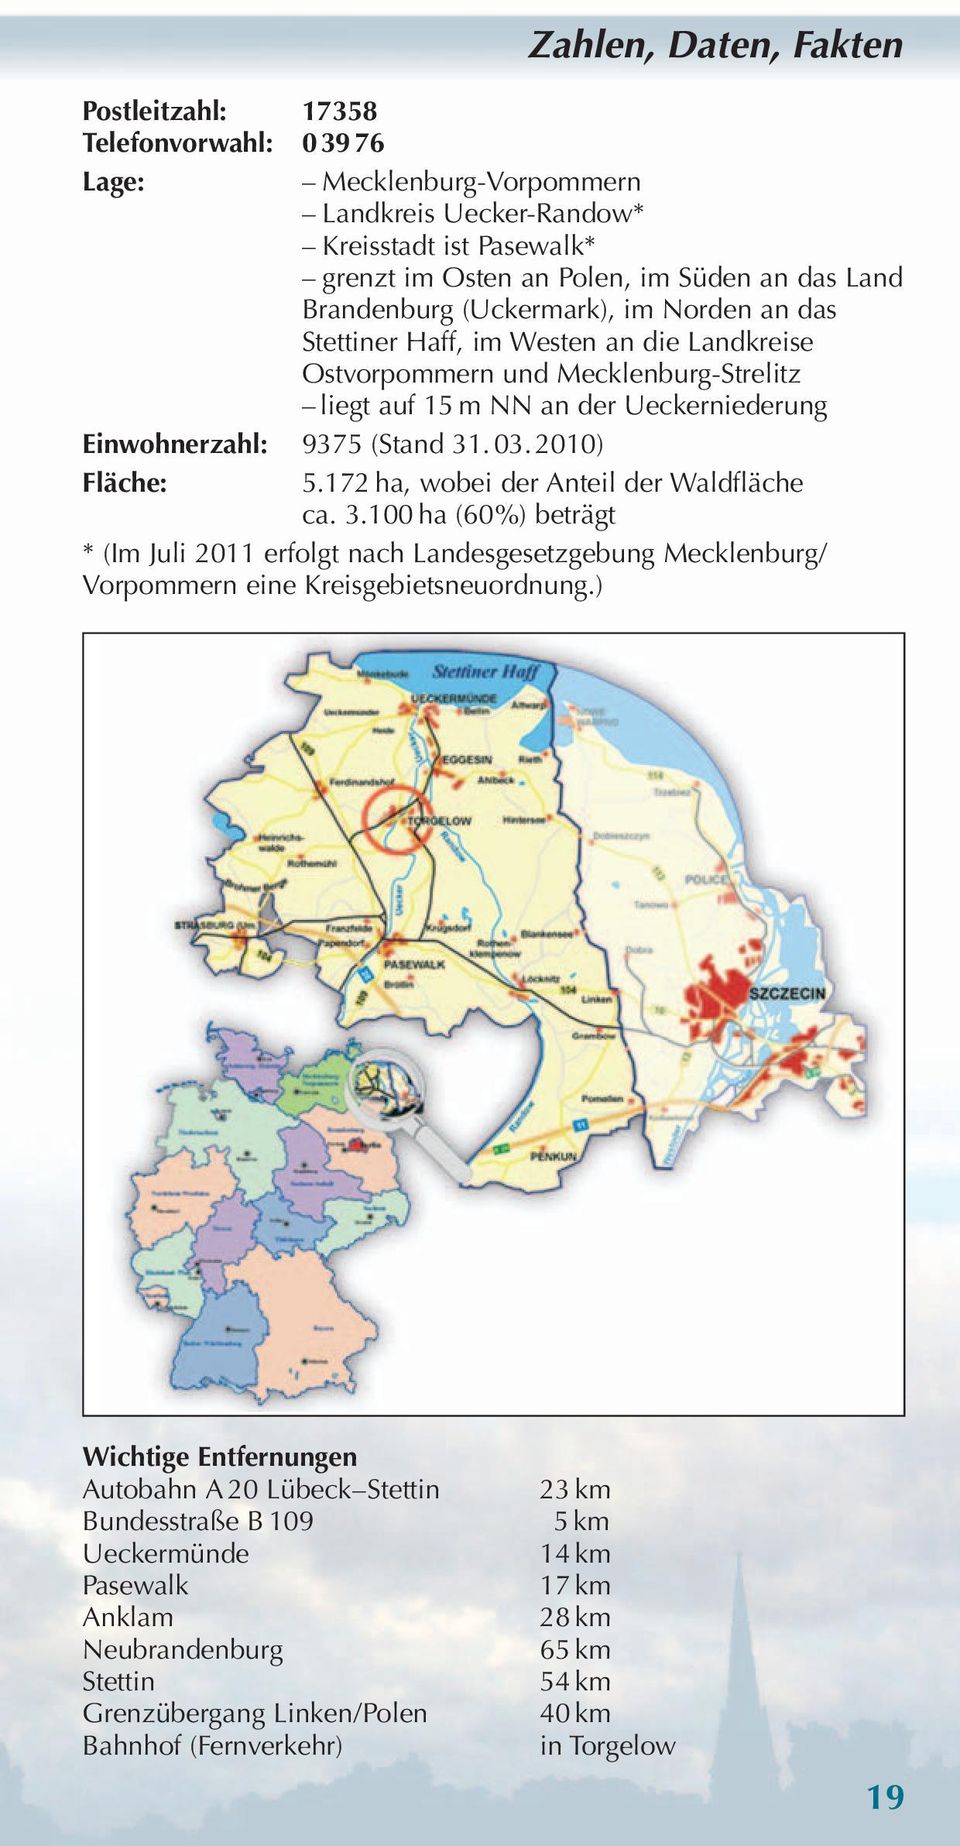 2010) Fläche: 5.172 ha, wobei der Anteil der Waldfläche ca. 3.100 ha (60%) beträgt * (Im Juli 2011 erfolgt nach Landesgesetzgebung Mecklenburg/ Vorpommern eine Kreisgebietsneuordnung.